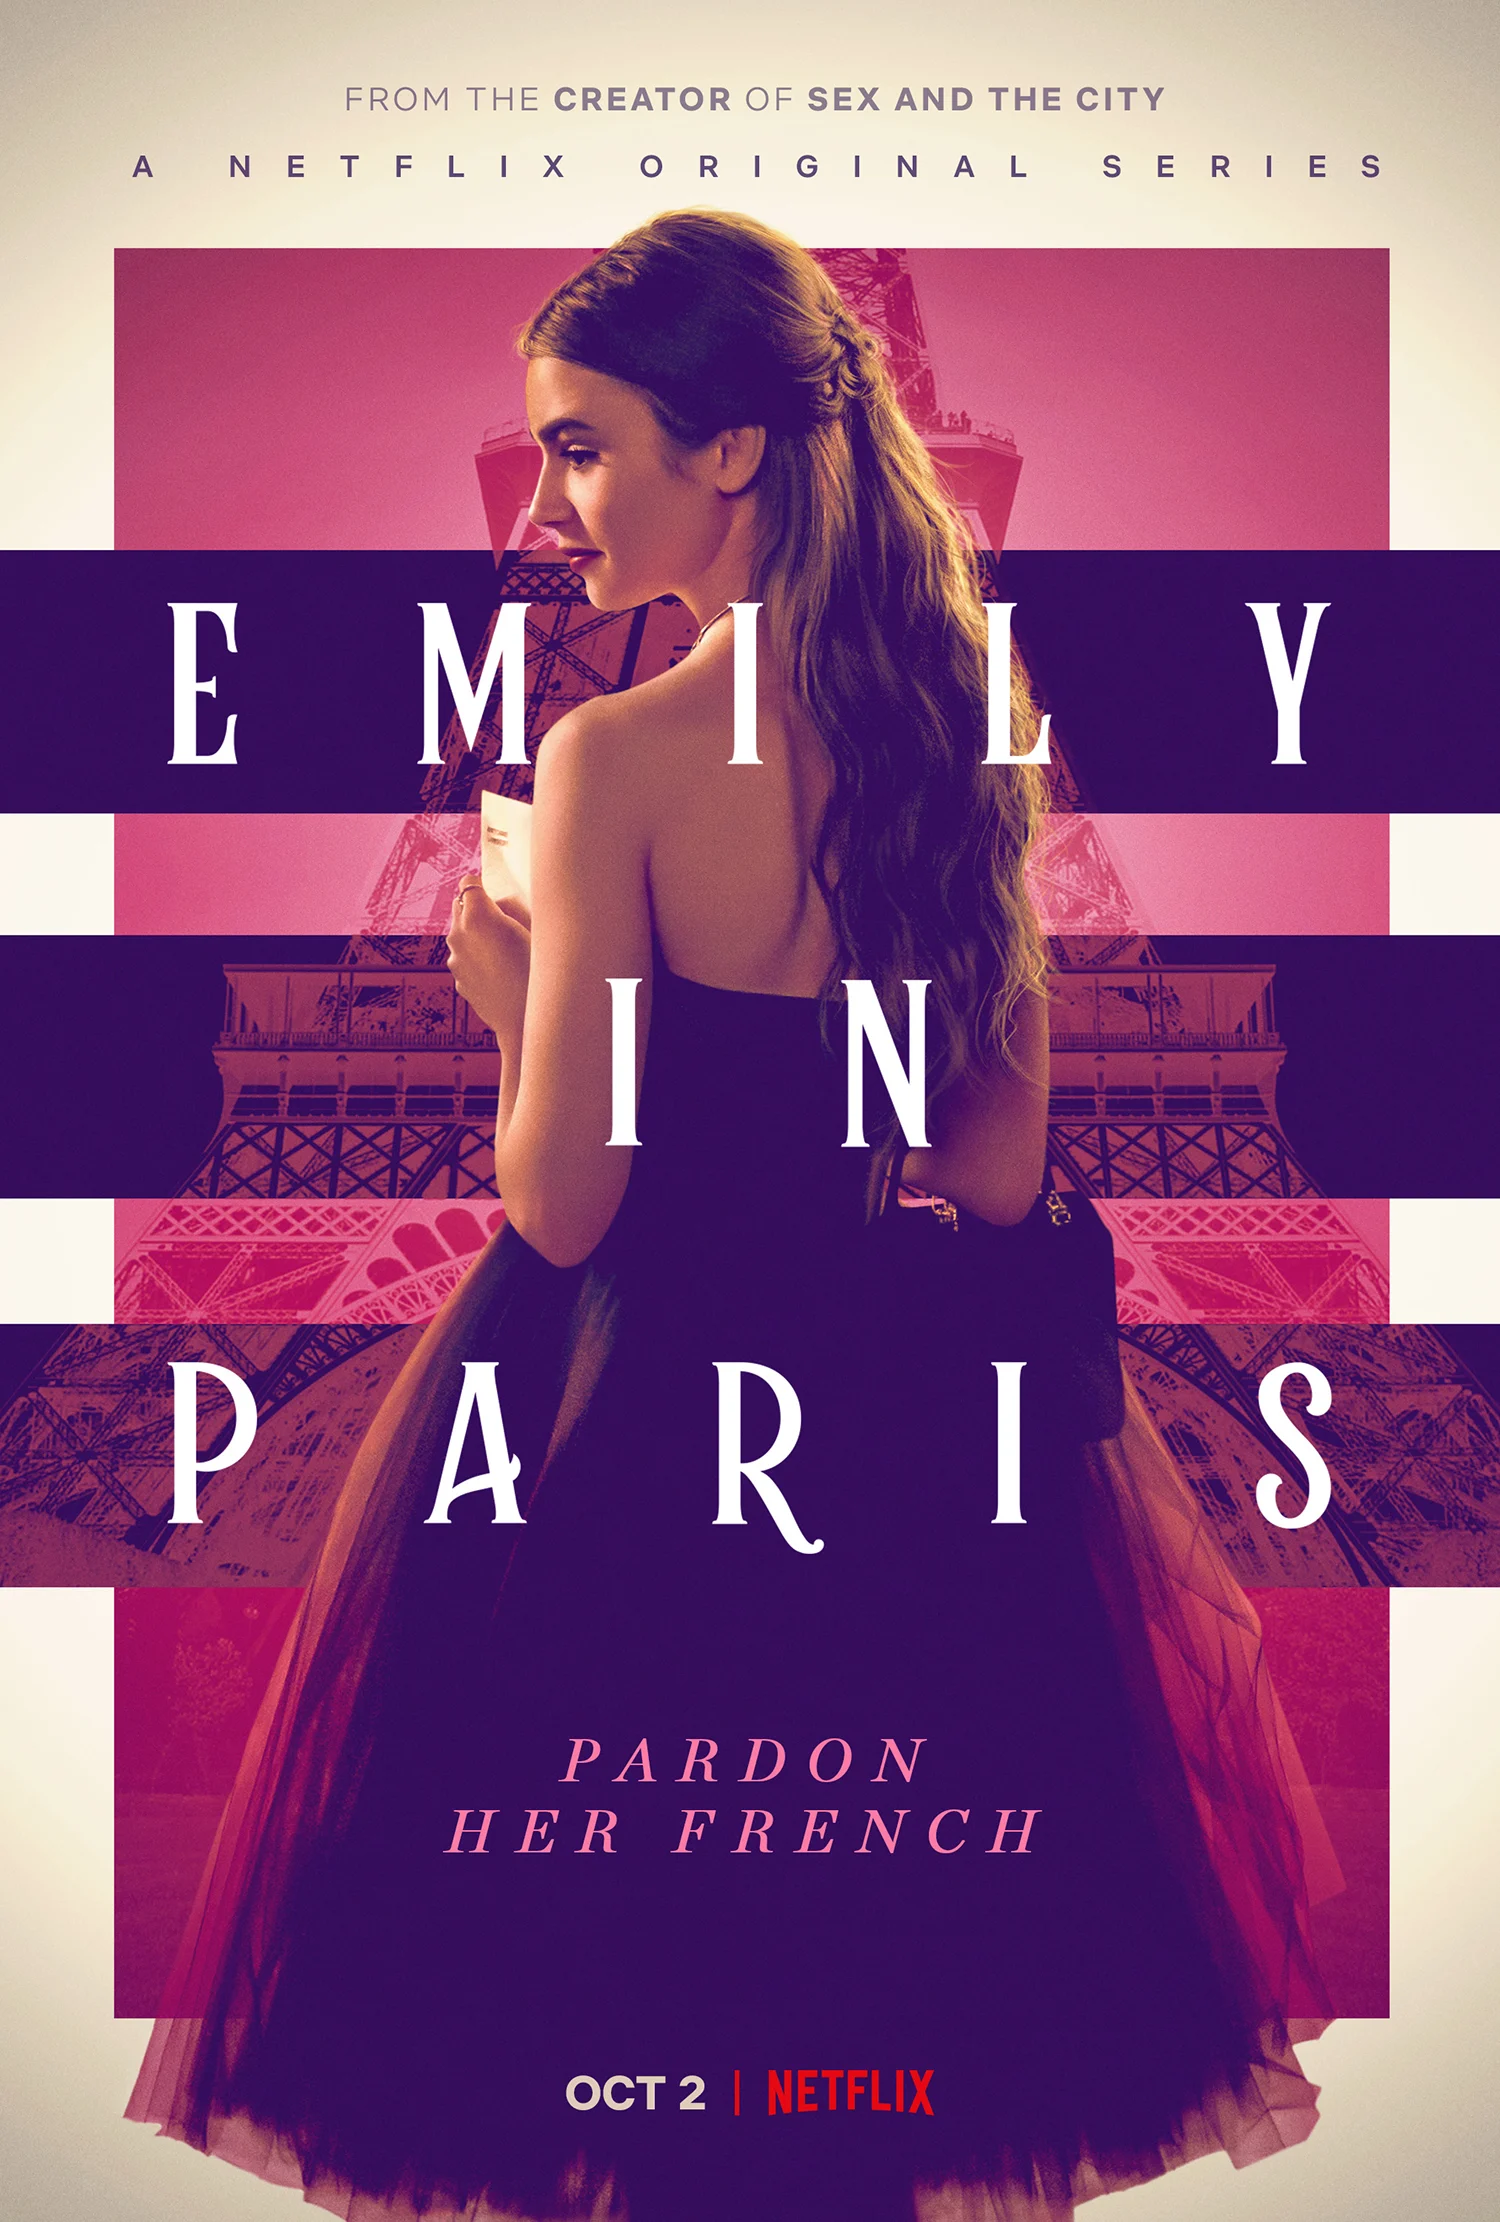 Emily In Paris Season 2 Wallpapers